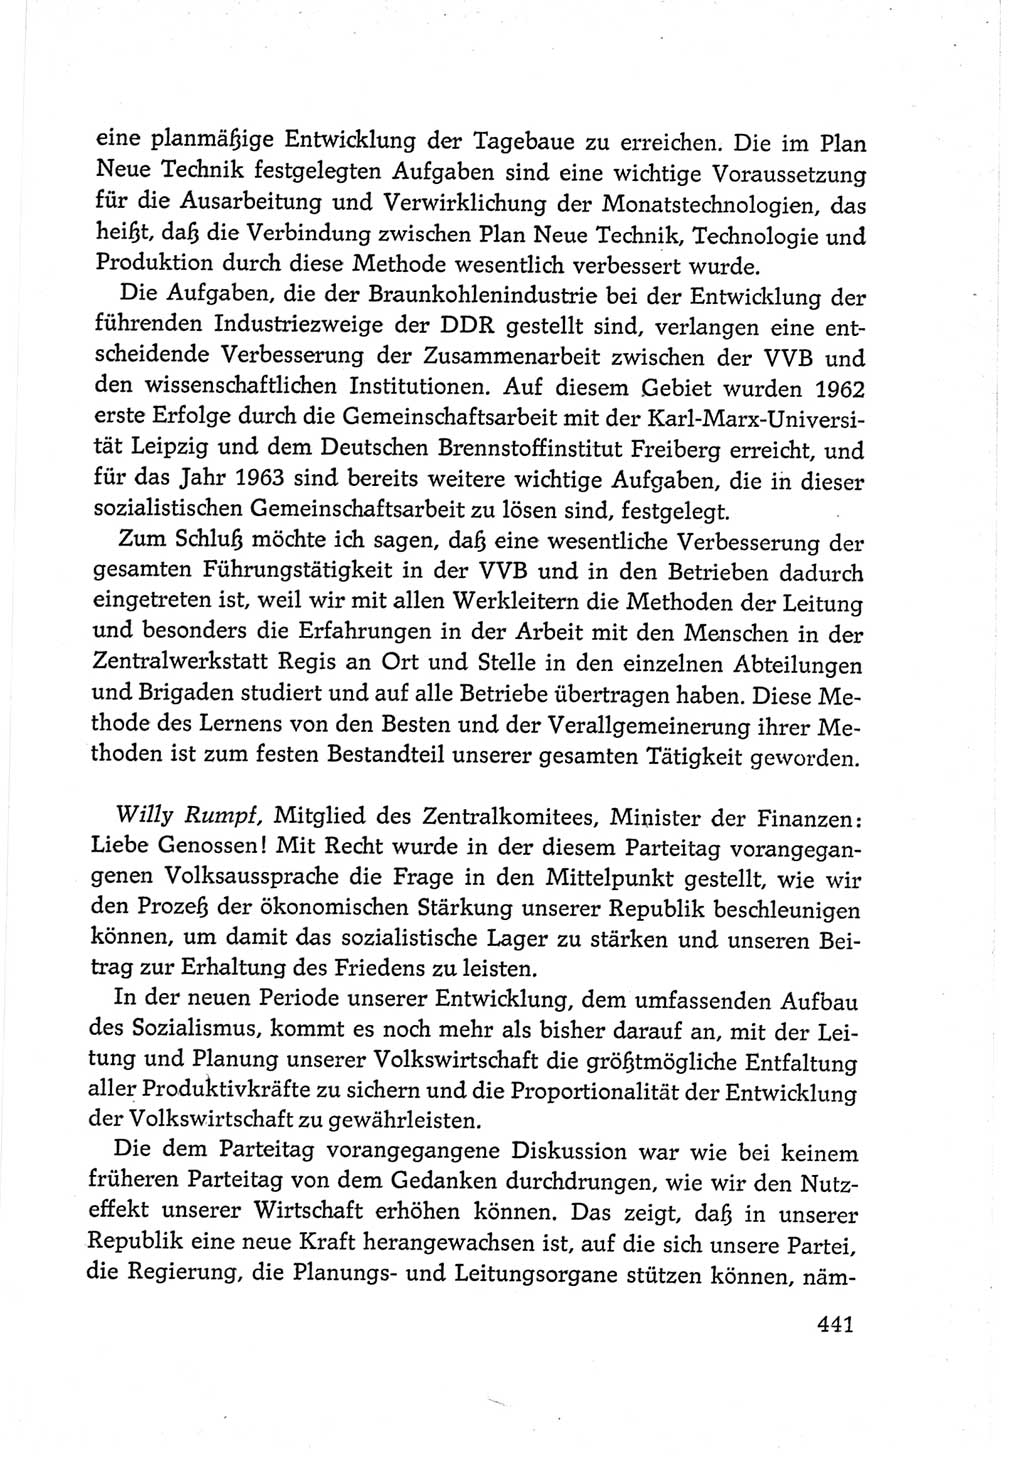 Protokoll der Verhandlungen des Ⅵ. Parteitages der Sozialistischen Einheitspartei Deutschlands (SED) [Deutsche Demokratische Republik (DDR)] 1963, Band Ⅲ, Seite 441 (Prot. Verh. Ⅵ. PT SED DDR 1963, Bd. Ⅲ, S. 441)